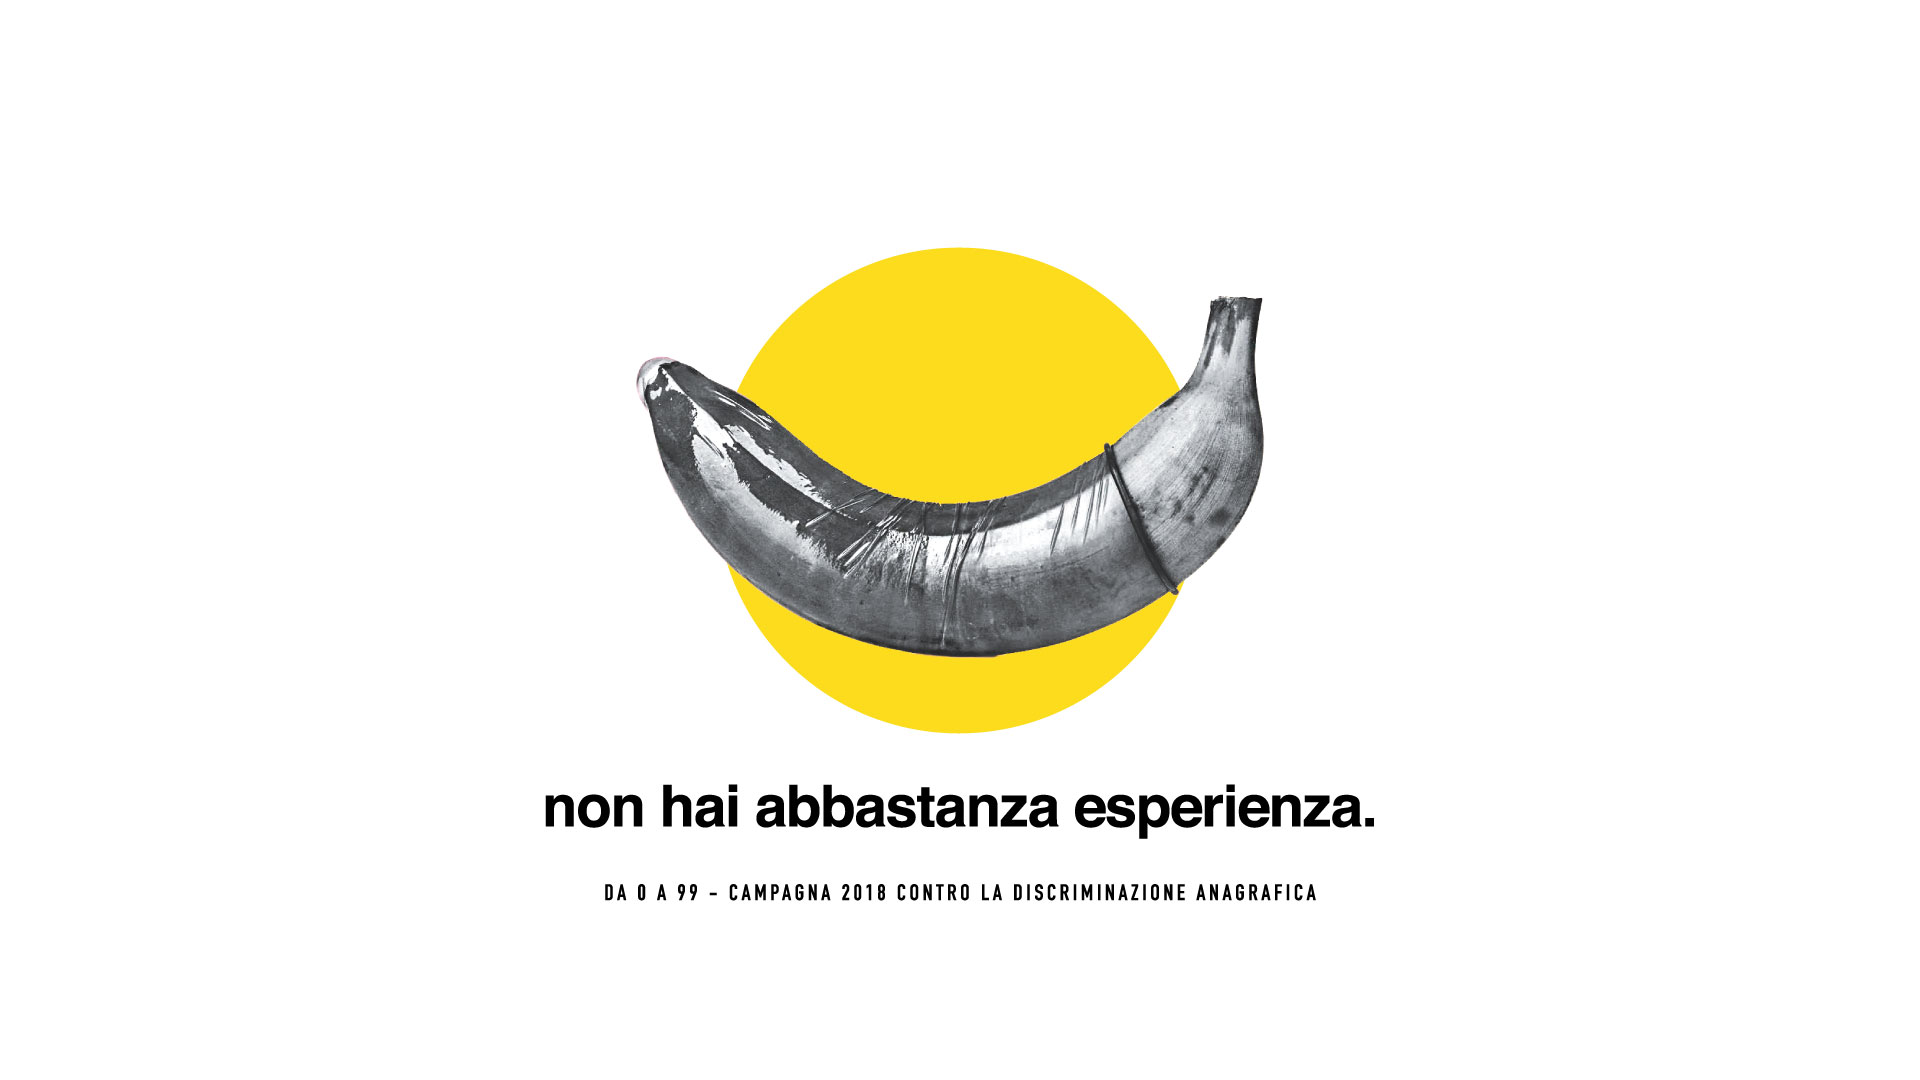 Preservativo infilato su una banana, immagine in biano e nero. Il pay off dice: "non hai abbastanza esperienza". Da 0 a 99 - Campagna contro la discriminazione anagrafica